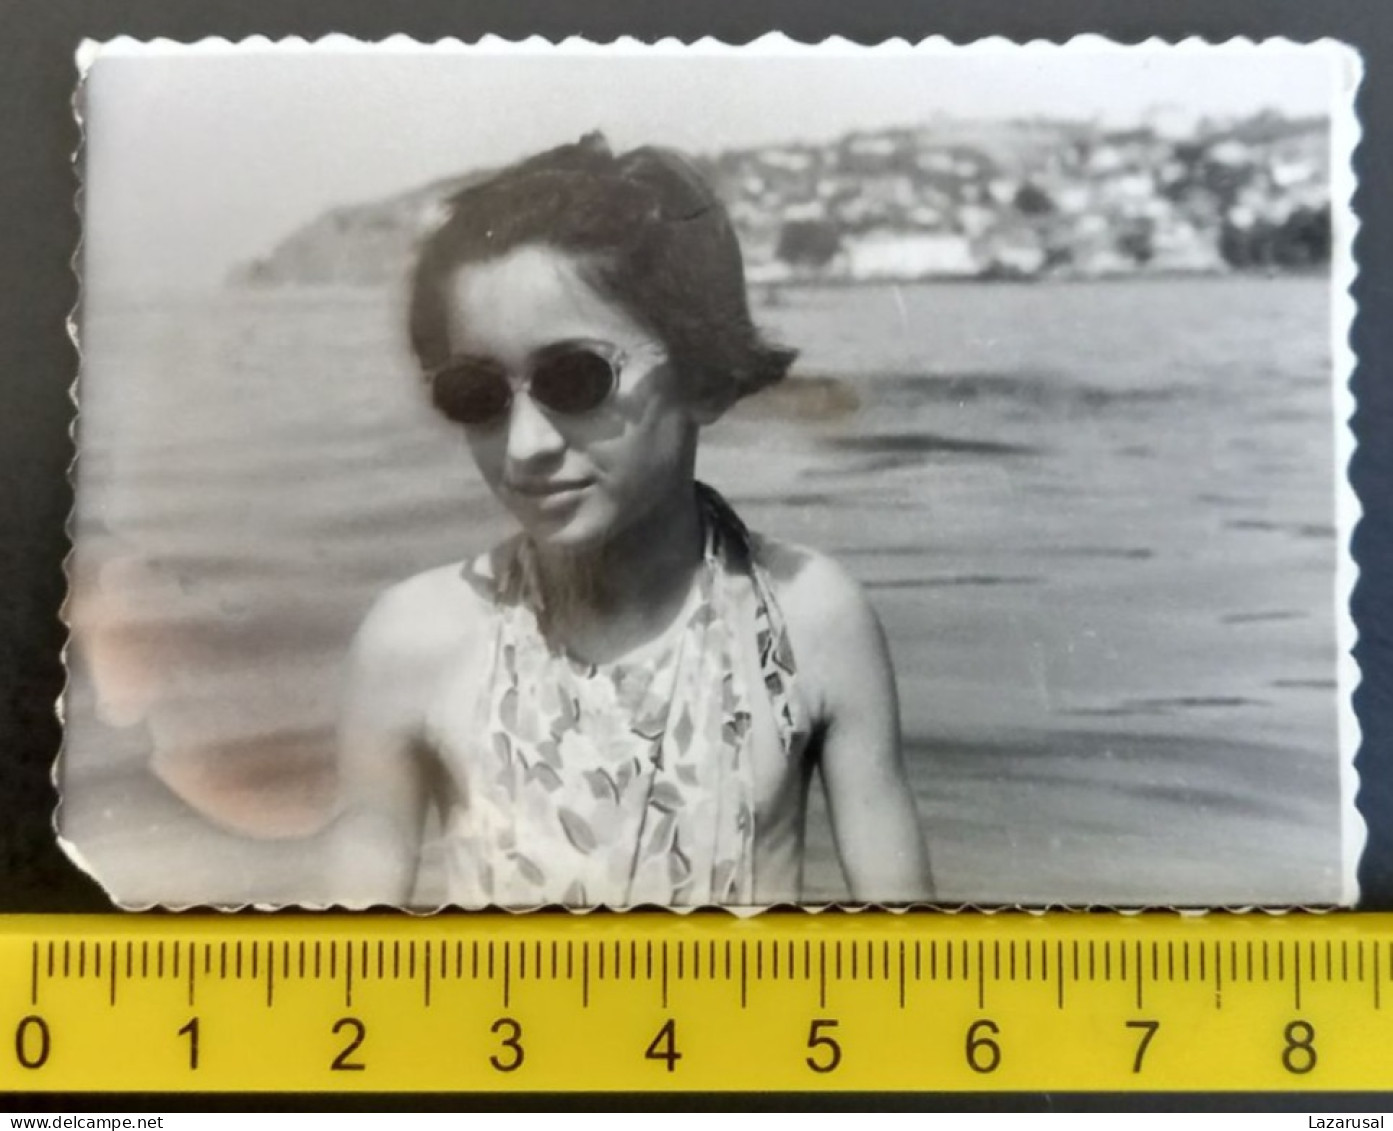 #15  Woman On Vacation - On The Beach In A Bathing Suit / Femme En Vacances - Sur La Plage En Maillot De Bain - Anonieme Personen